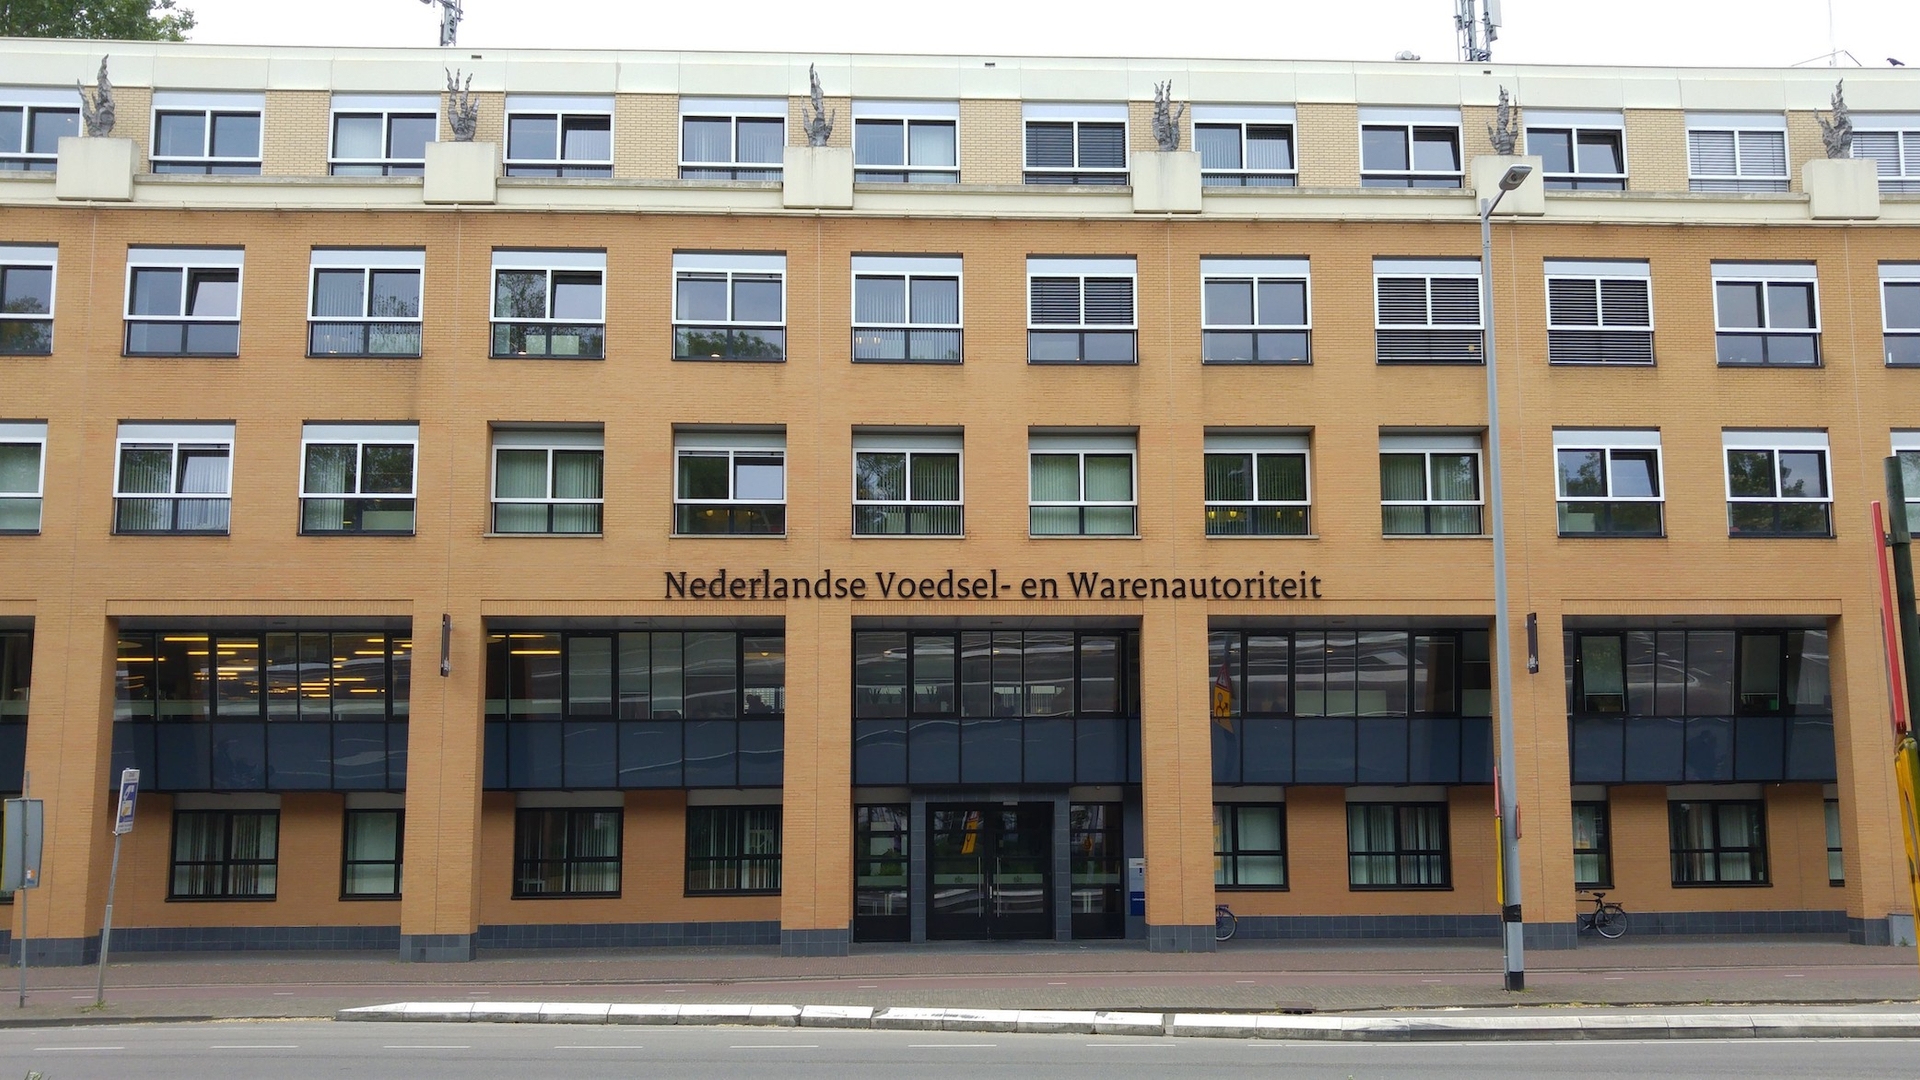 Hoofdkantoor NVWA, Nederlandse Voedsel- En Warenautoriteit